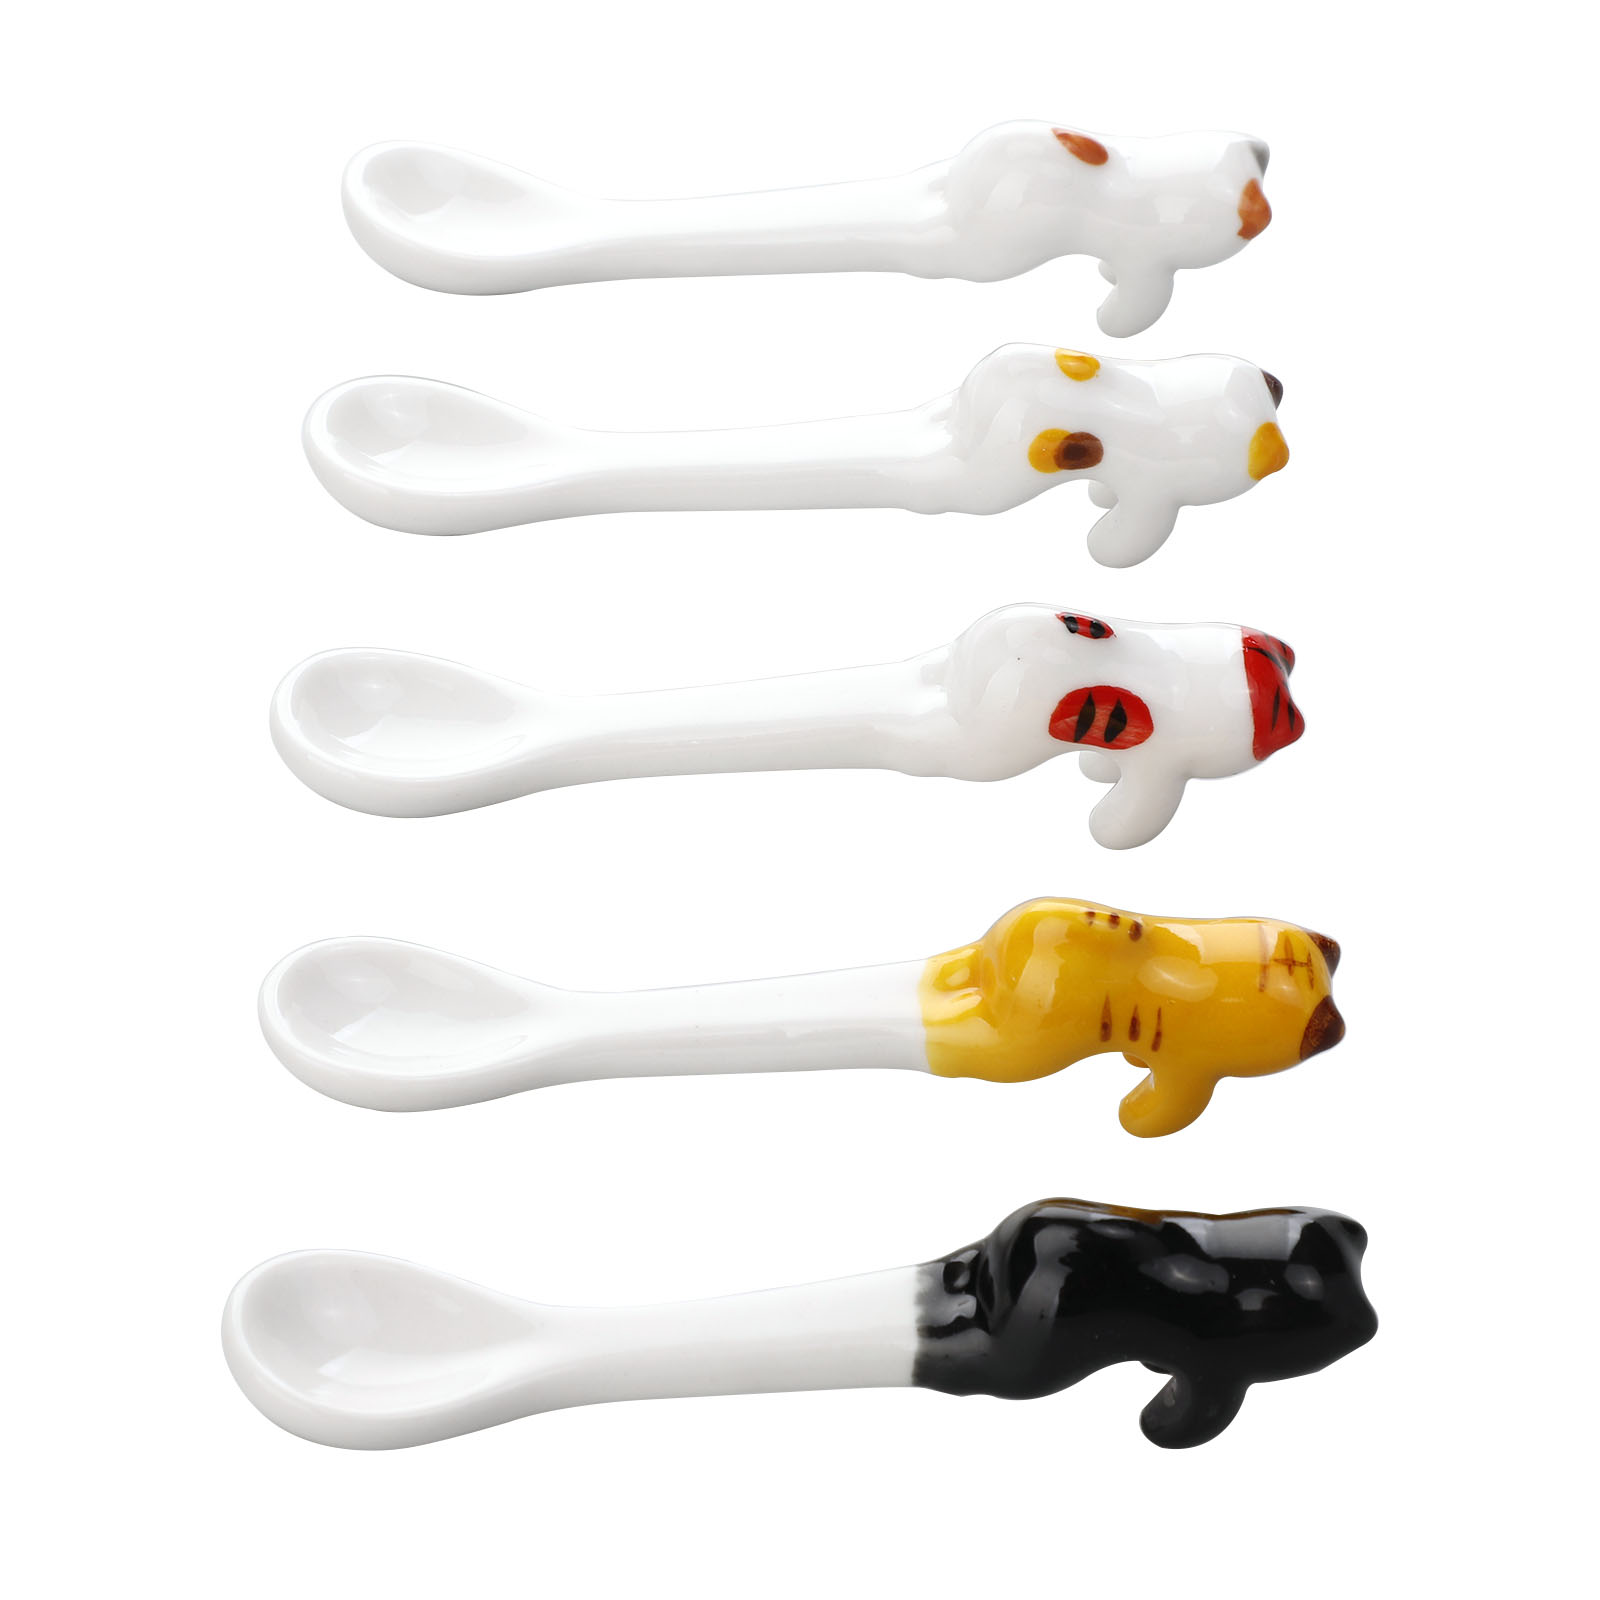 5pcs/set Tableware Cartoon Kids Spoon Set Stainless Steel Cute Fork Spoon Baby Spoons Kids Baby Gadgets Baby Spoon Set